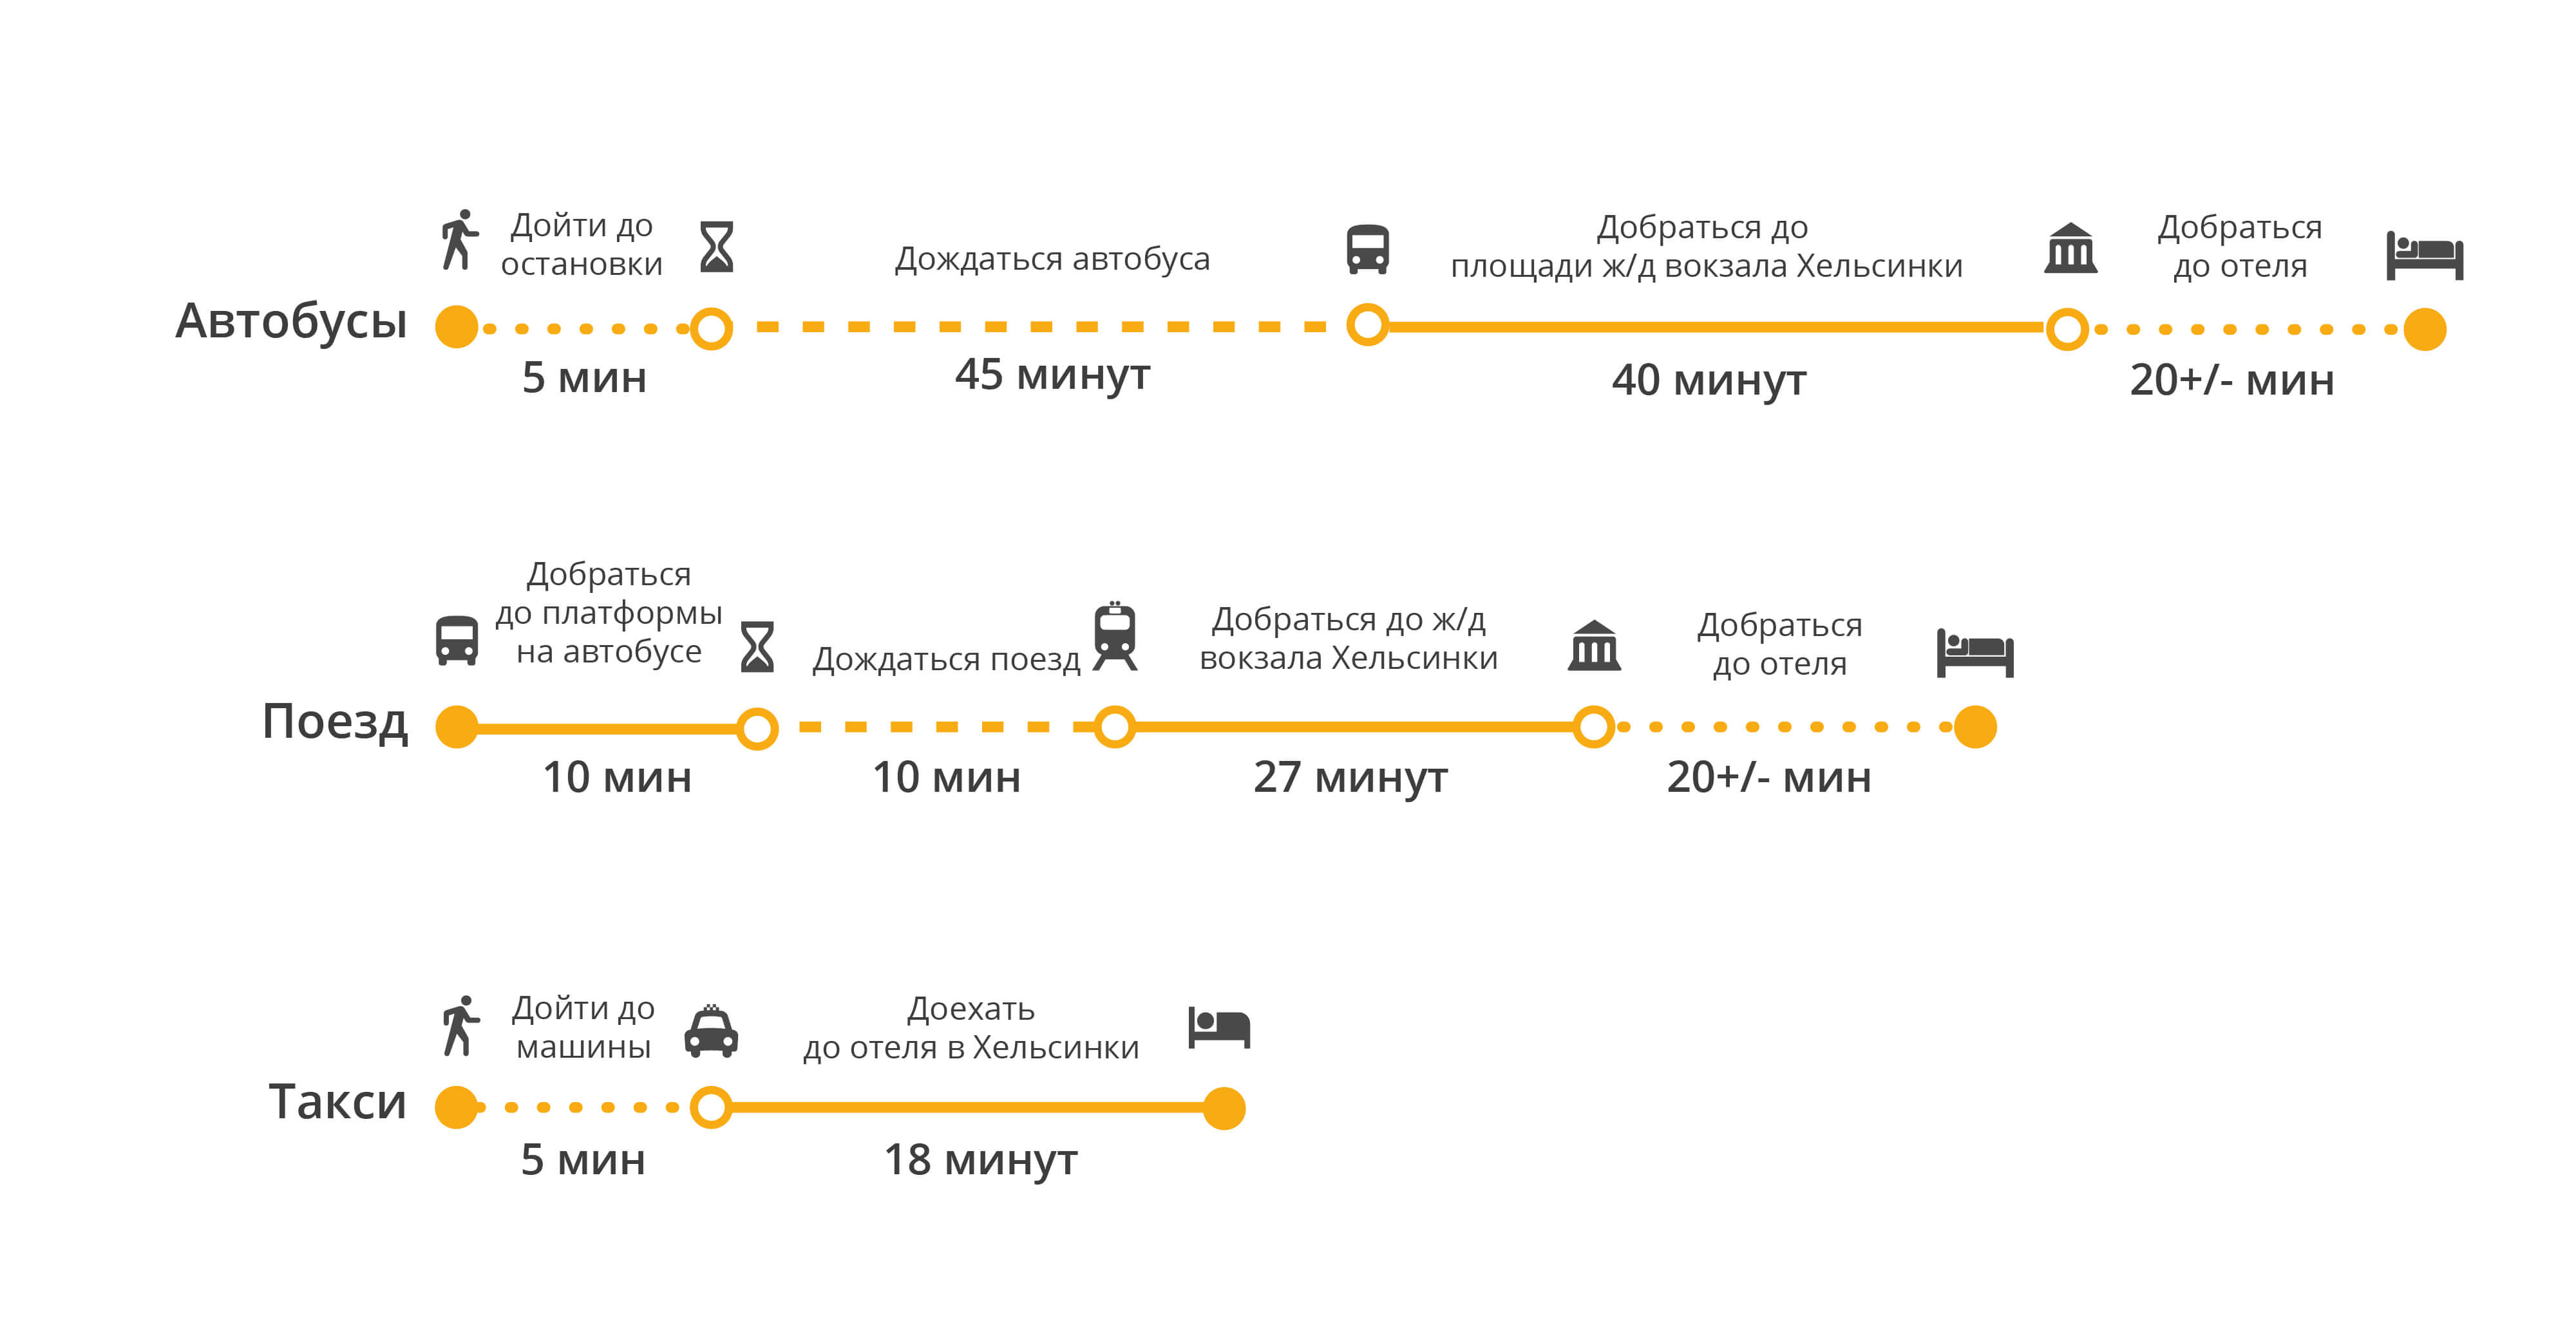 Автобус  санкт-петербург — хельсинки. расписание 2021, цены на билеты, время в пути, отзывы